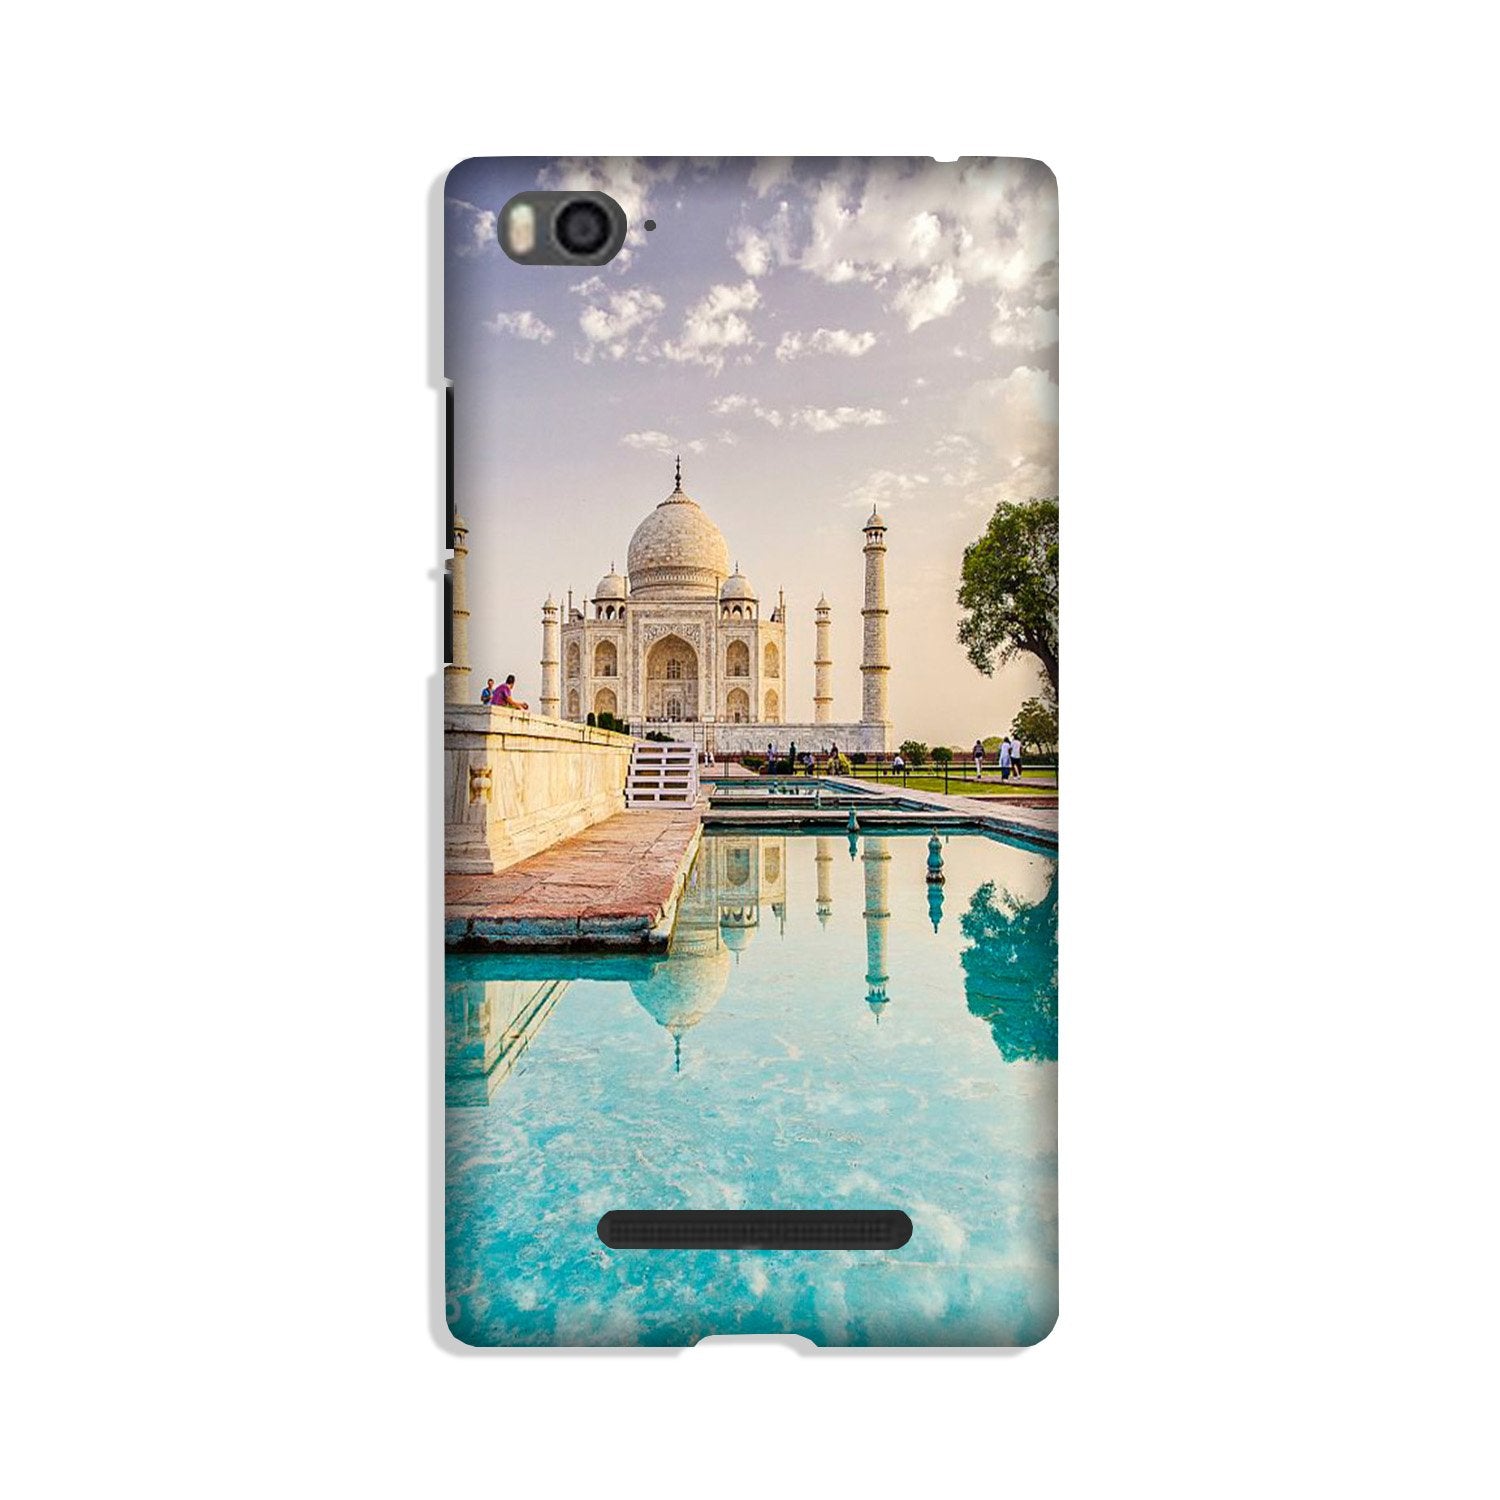 Taj Mahal Case for Xiaomi Mi 4i (Design No. 297)